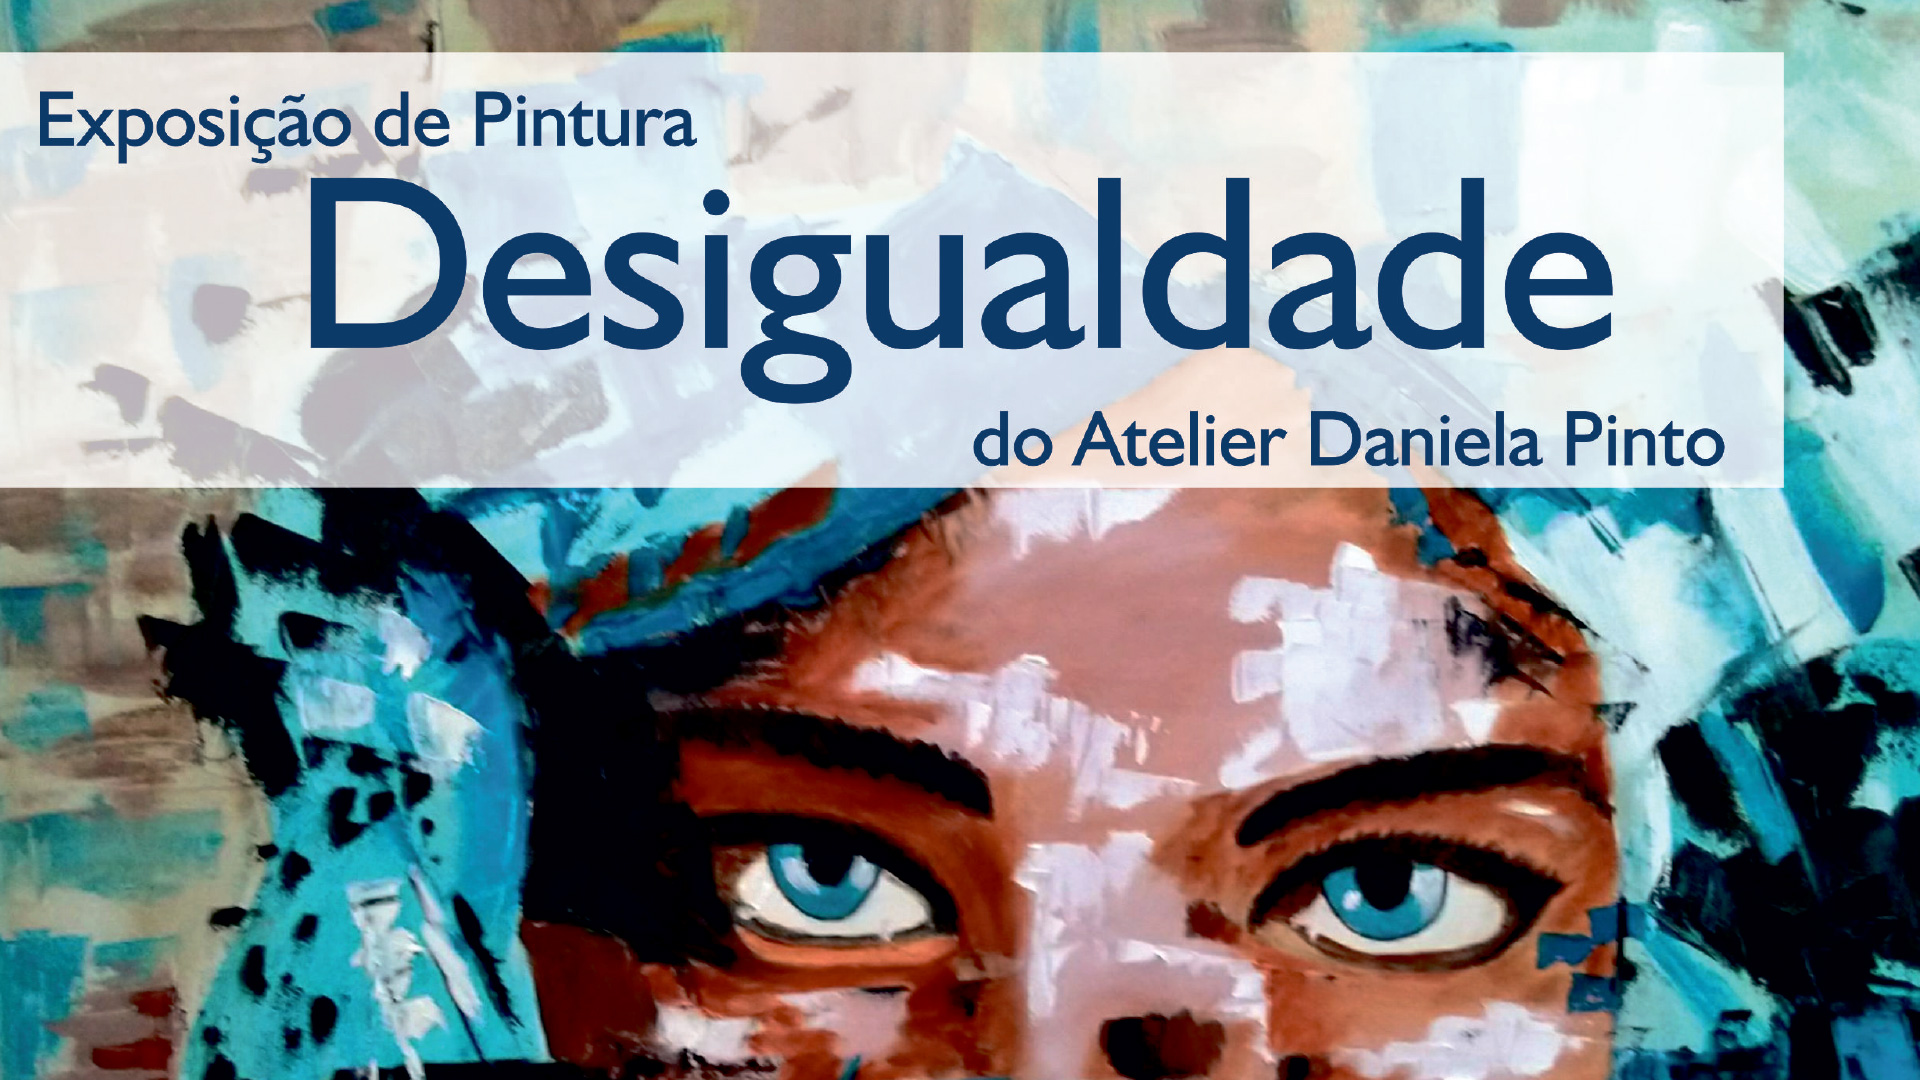 Biblioteca Municipal José Cardoso Pires recebe Exposição de Pintura “Desigualdade”